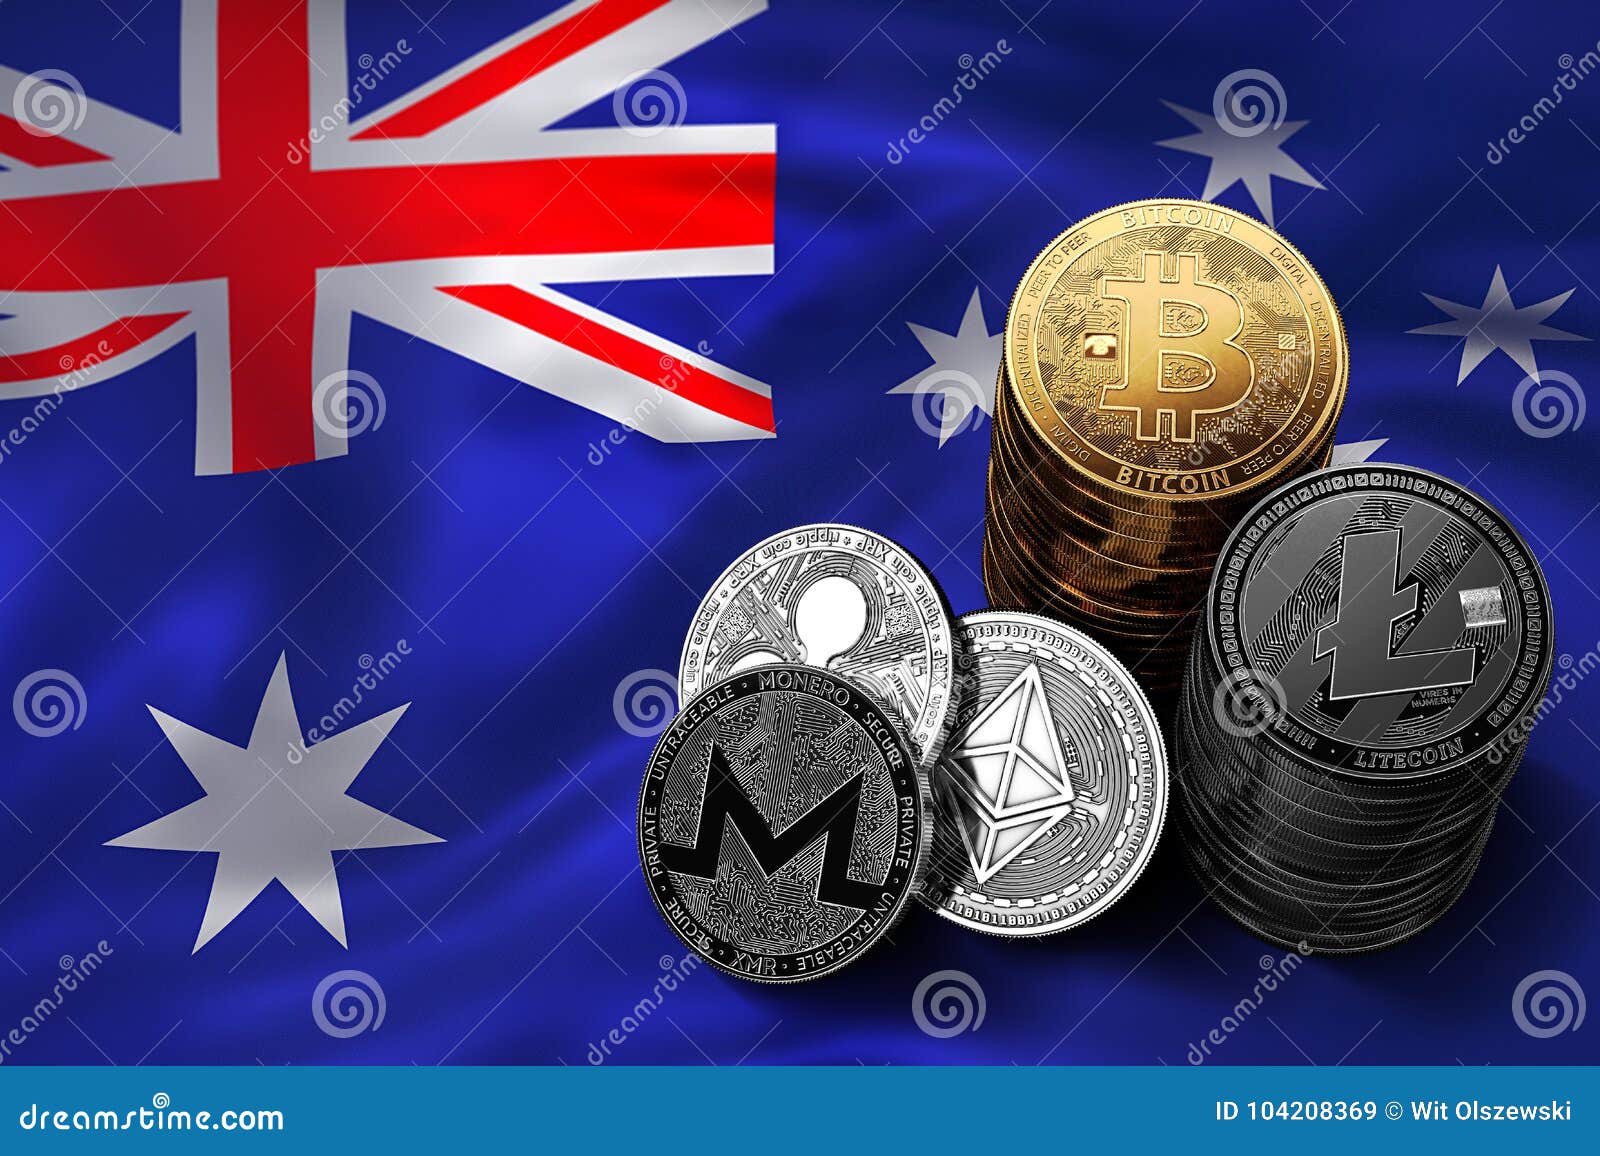 australia and bitcoin